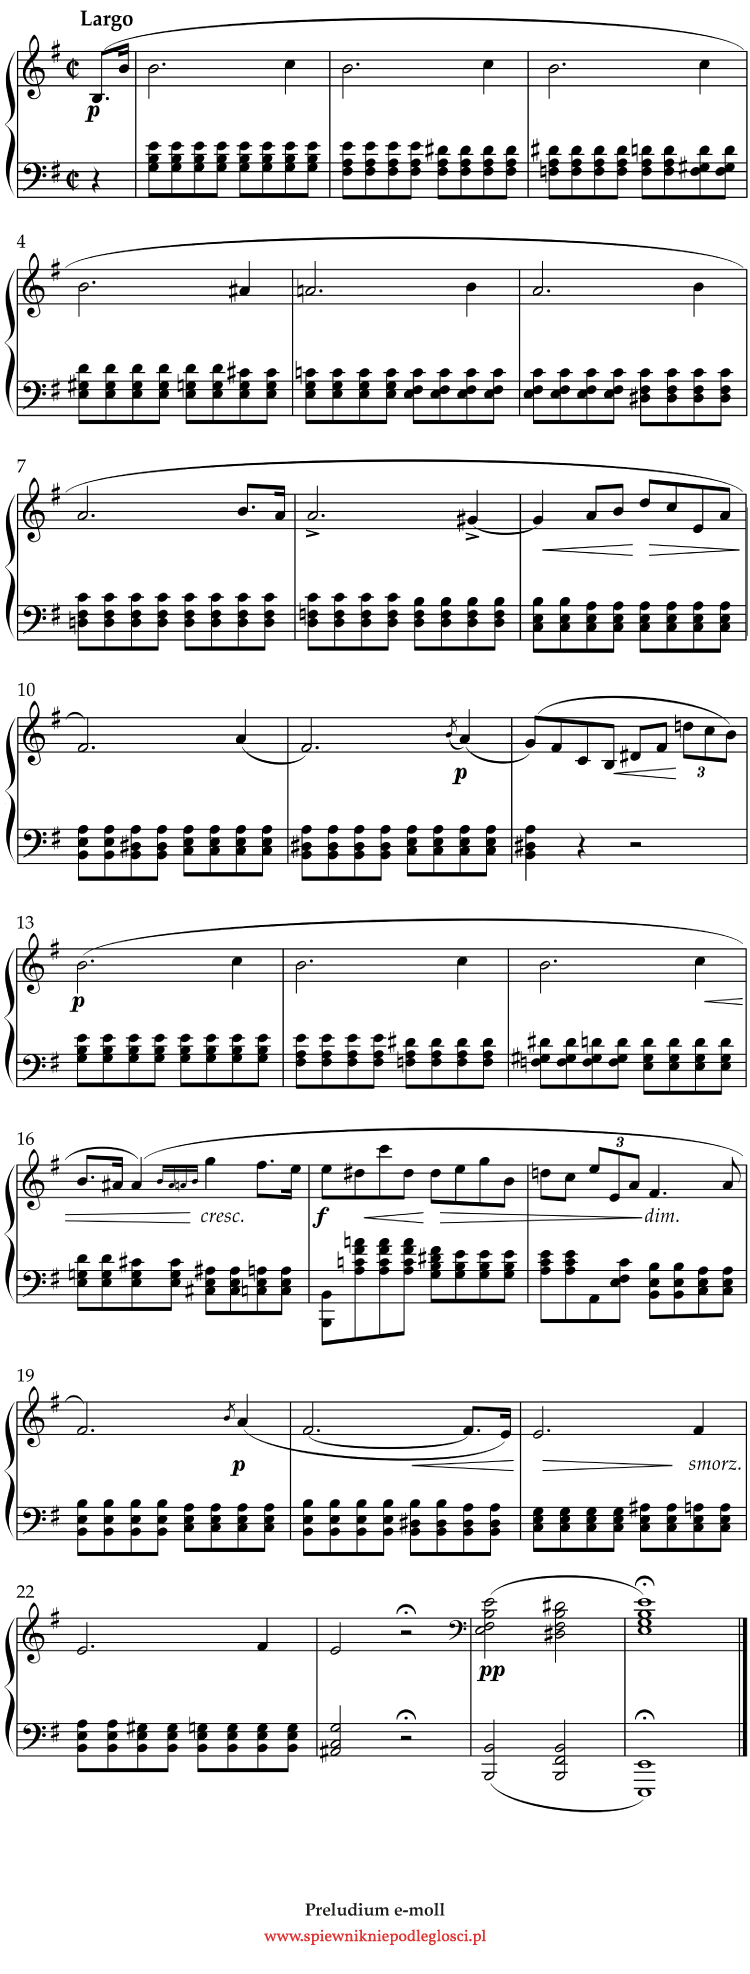 preludium e-moll Chopin nuty